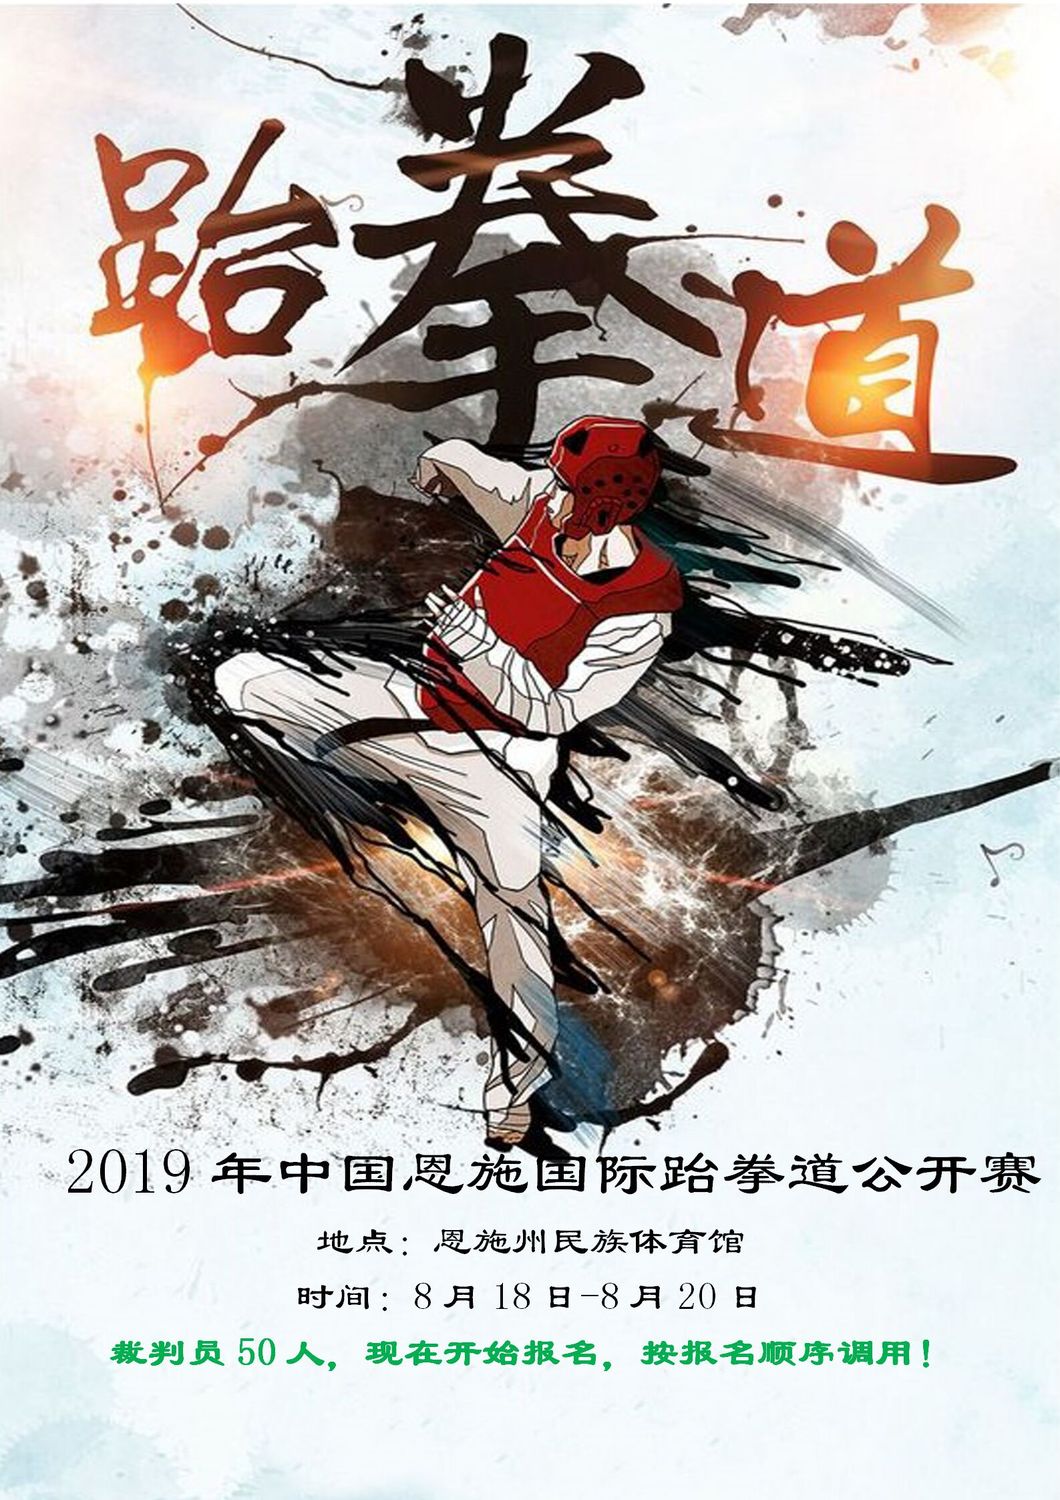 赛事15-2019年中国恩施国际跆拳道公开赛8月18日-8月20日_01.jpg